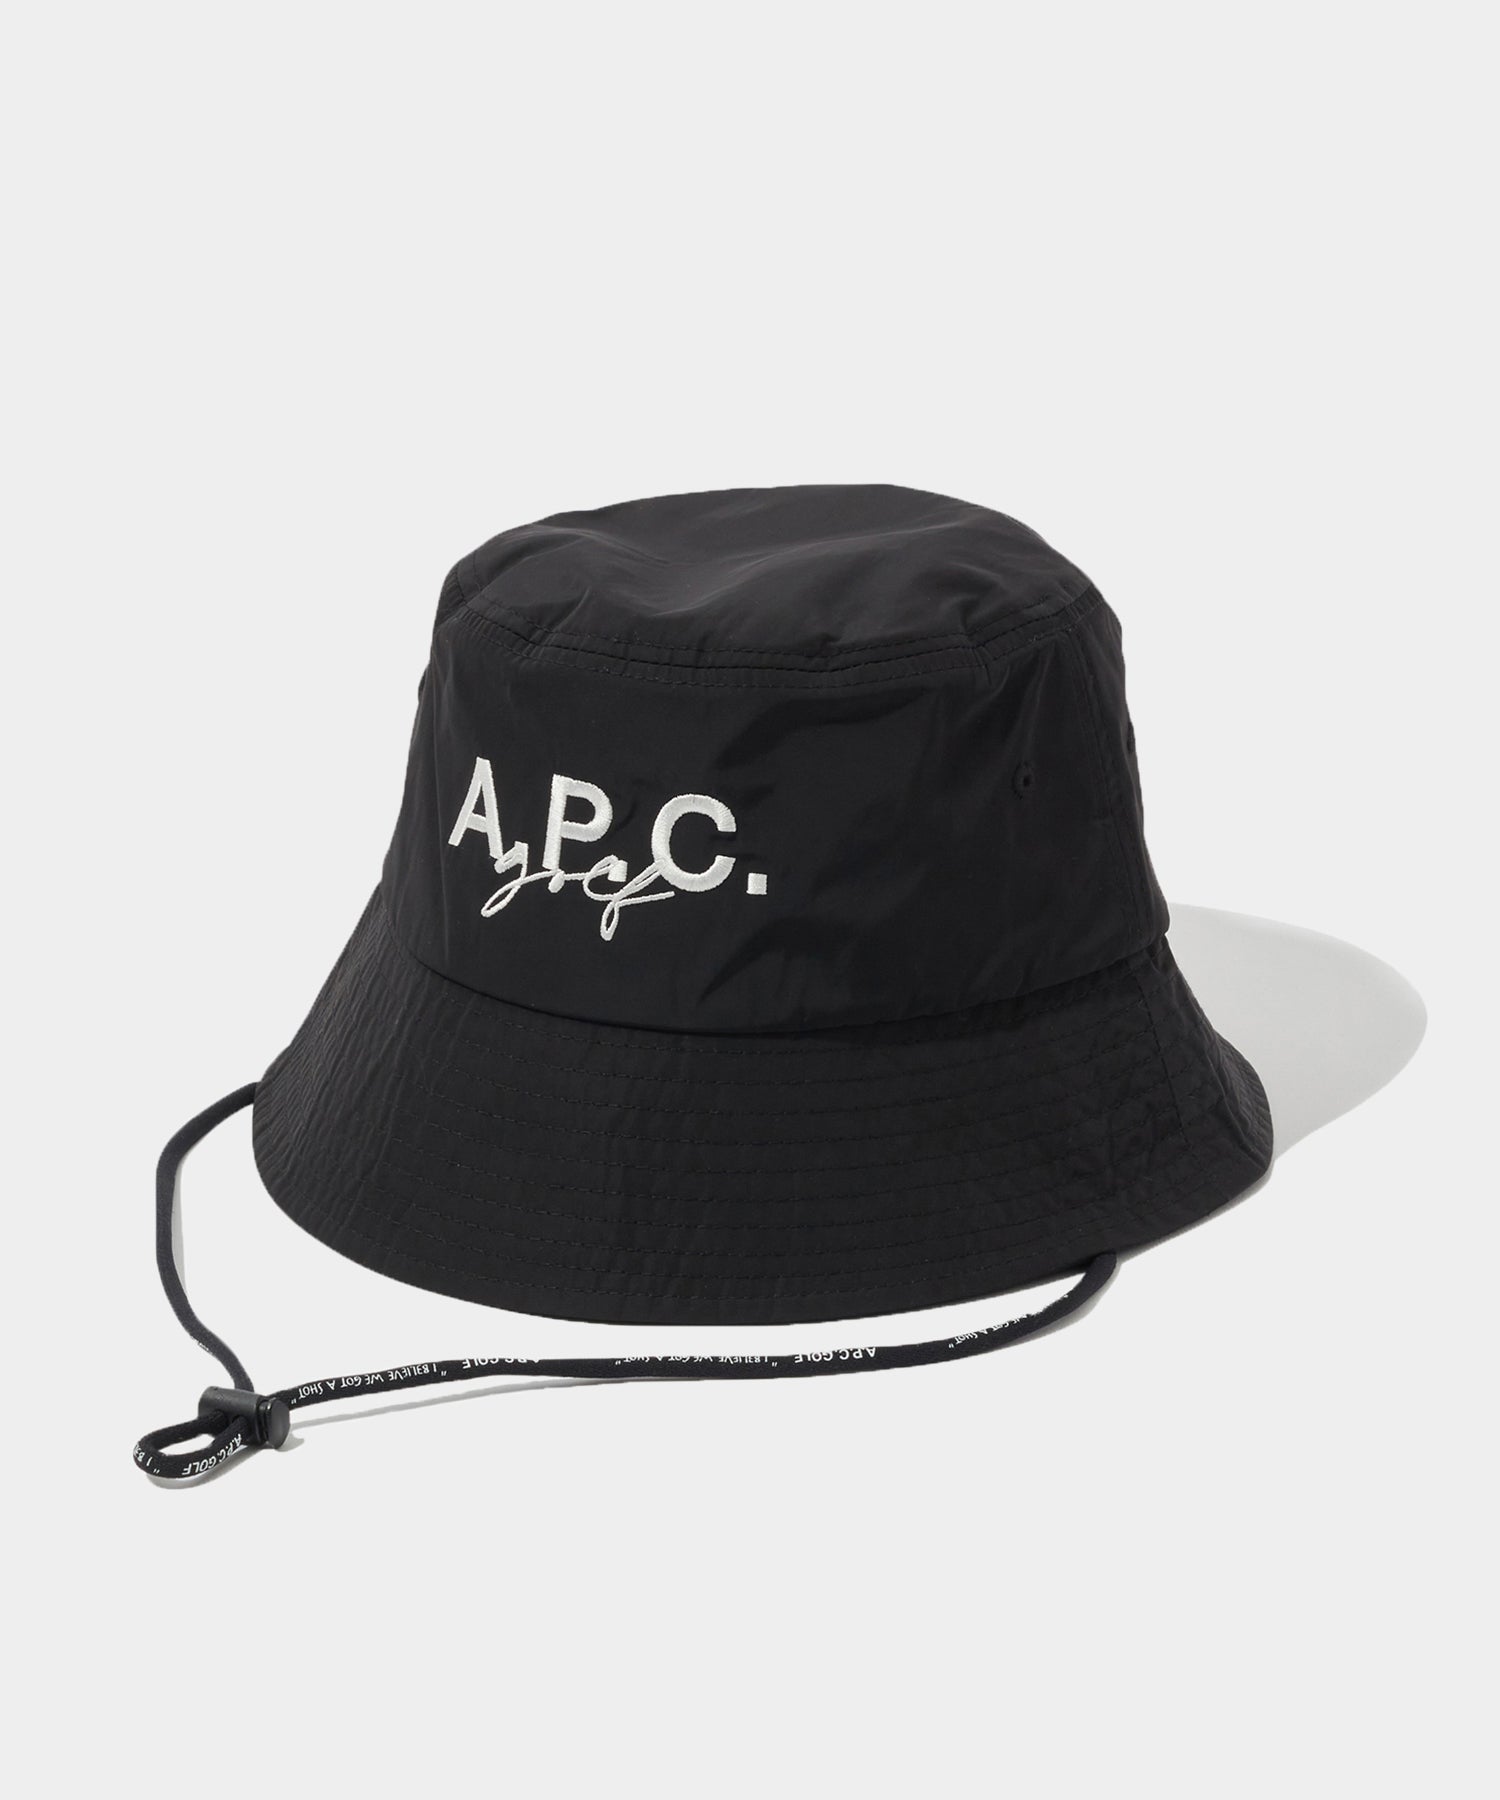 a.p.c. bucket hat www.krzysztofbialy.com